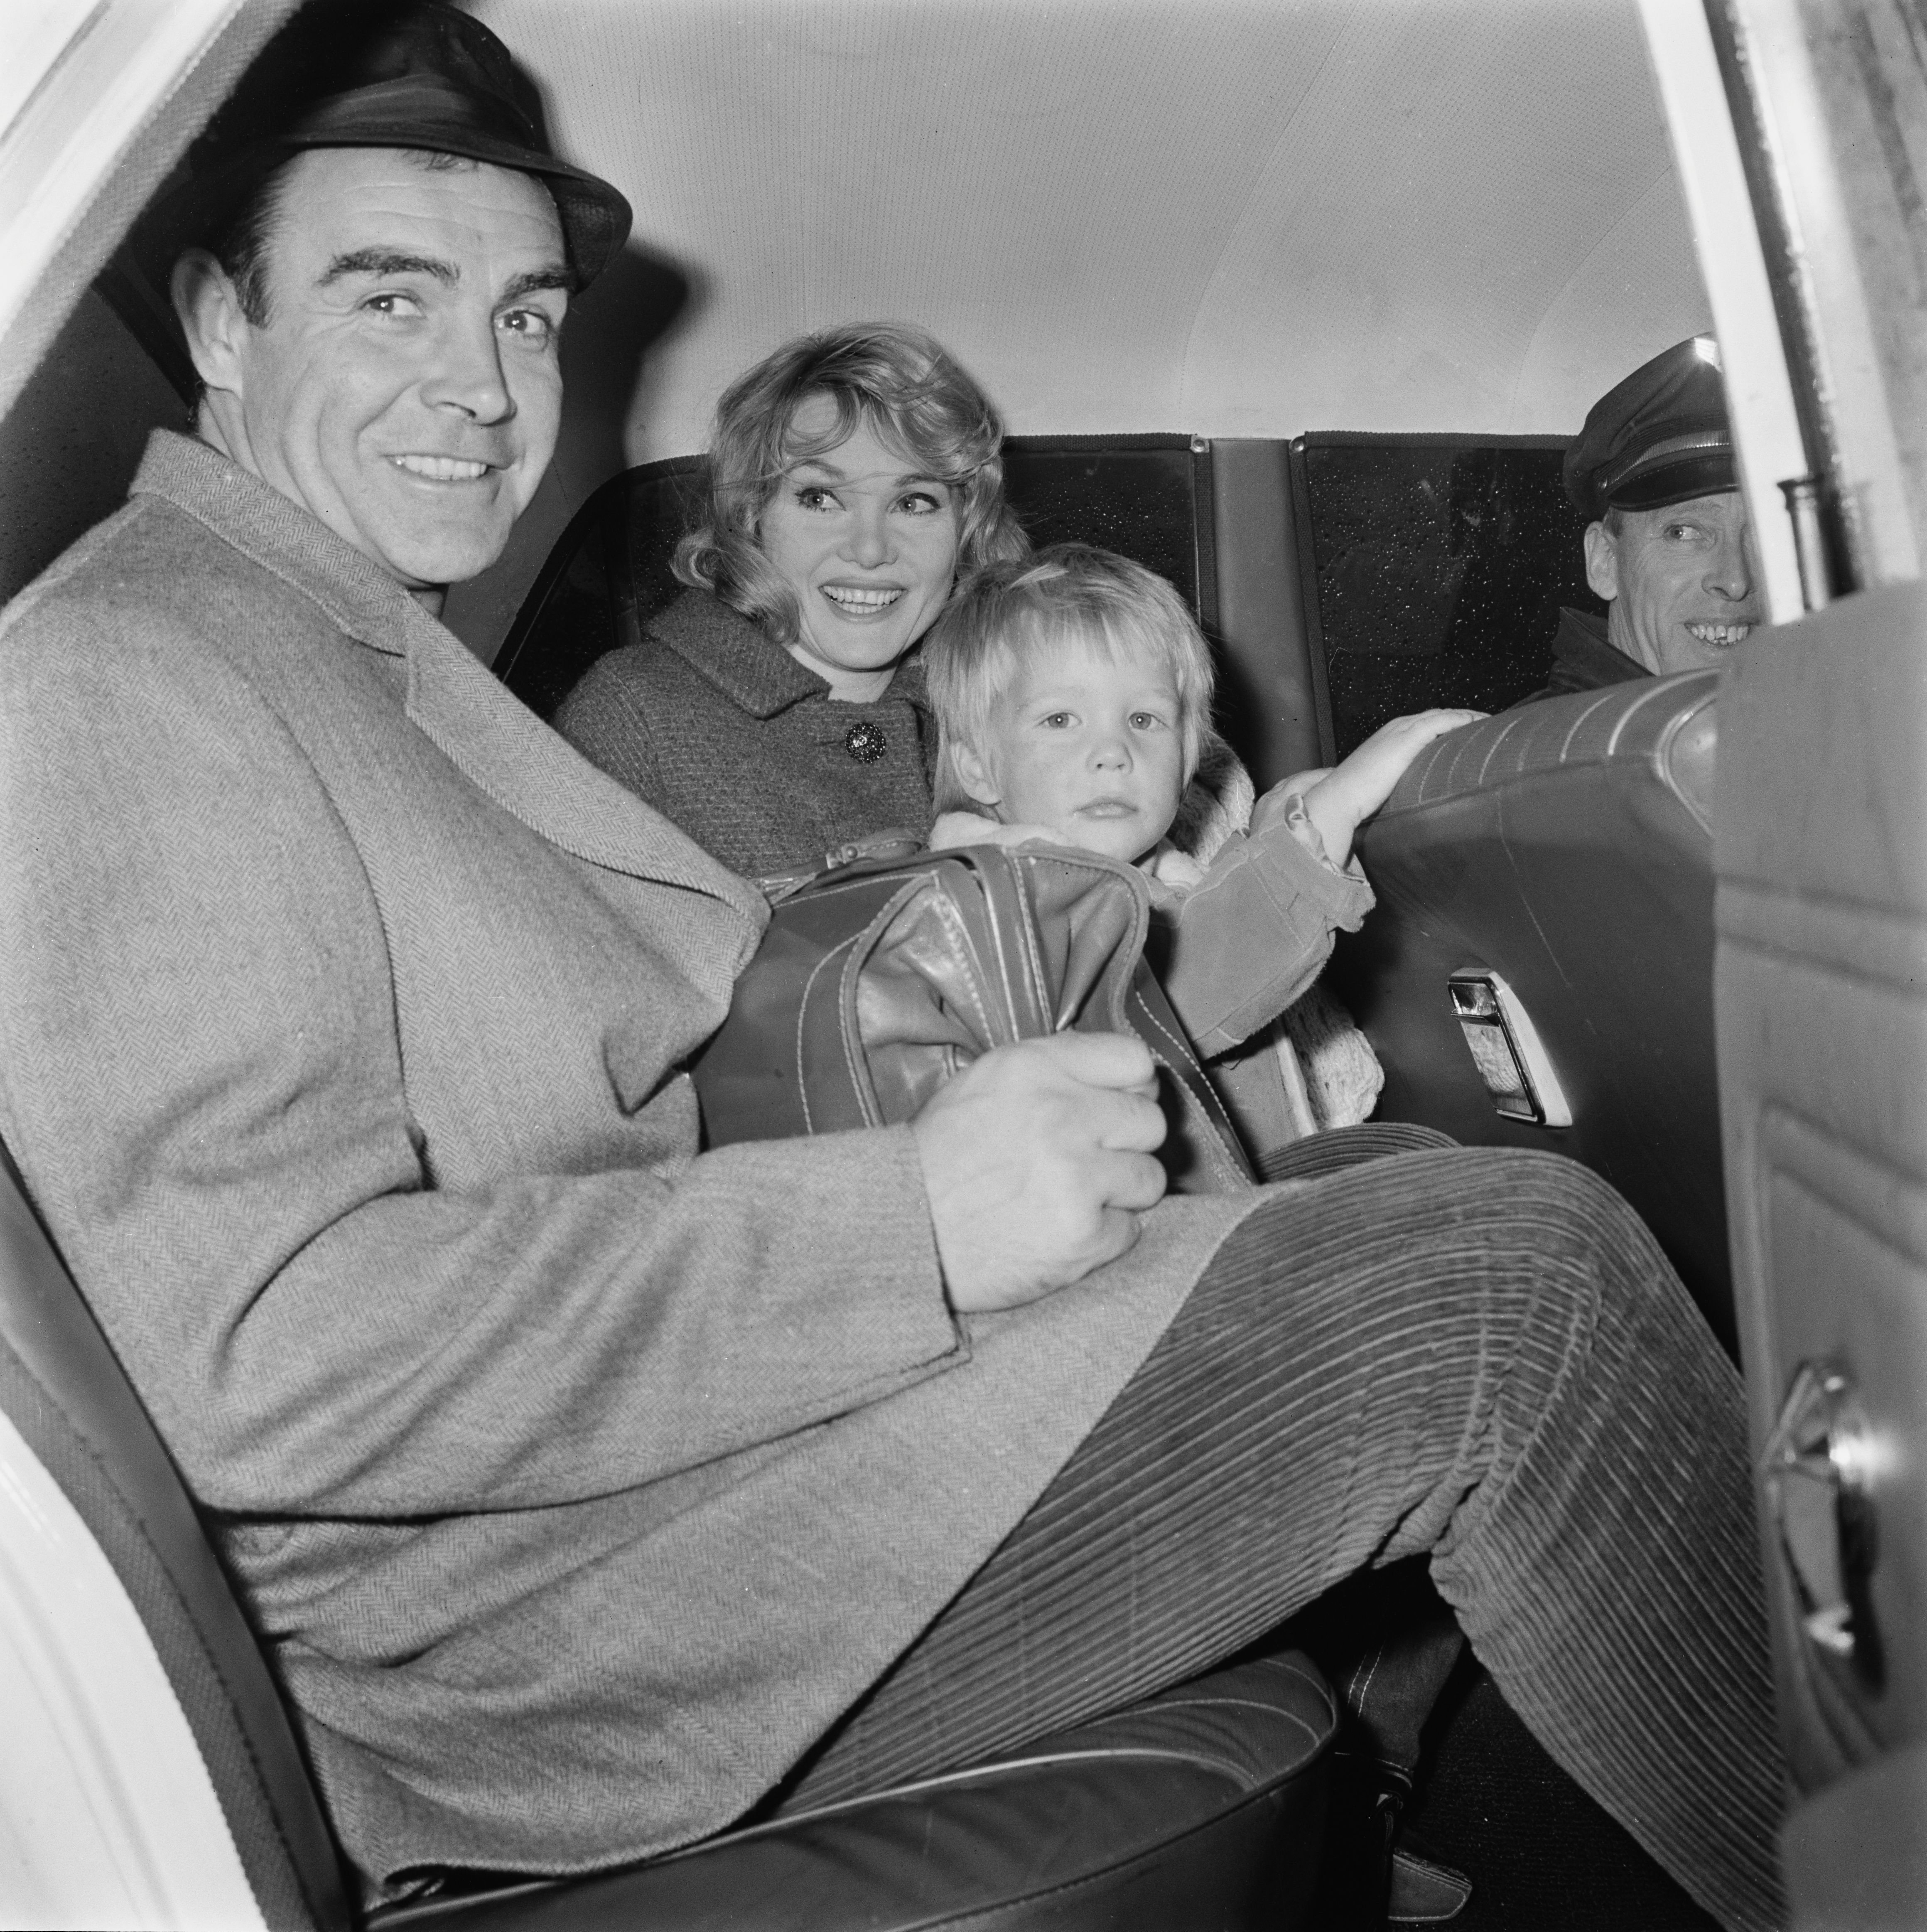   Sean Connery, eşi aktris Diane Cilento (1932 - 2011) ve oğulları Jason ile Londra Havalimanı'nda, Birleşik Krallık, 19 Aralık 1965 |  Kaynak: Getty Images 